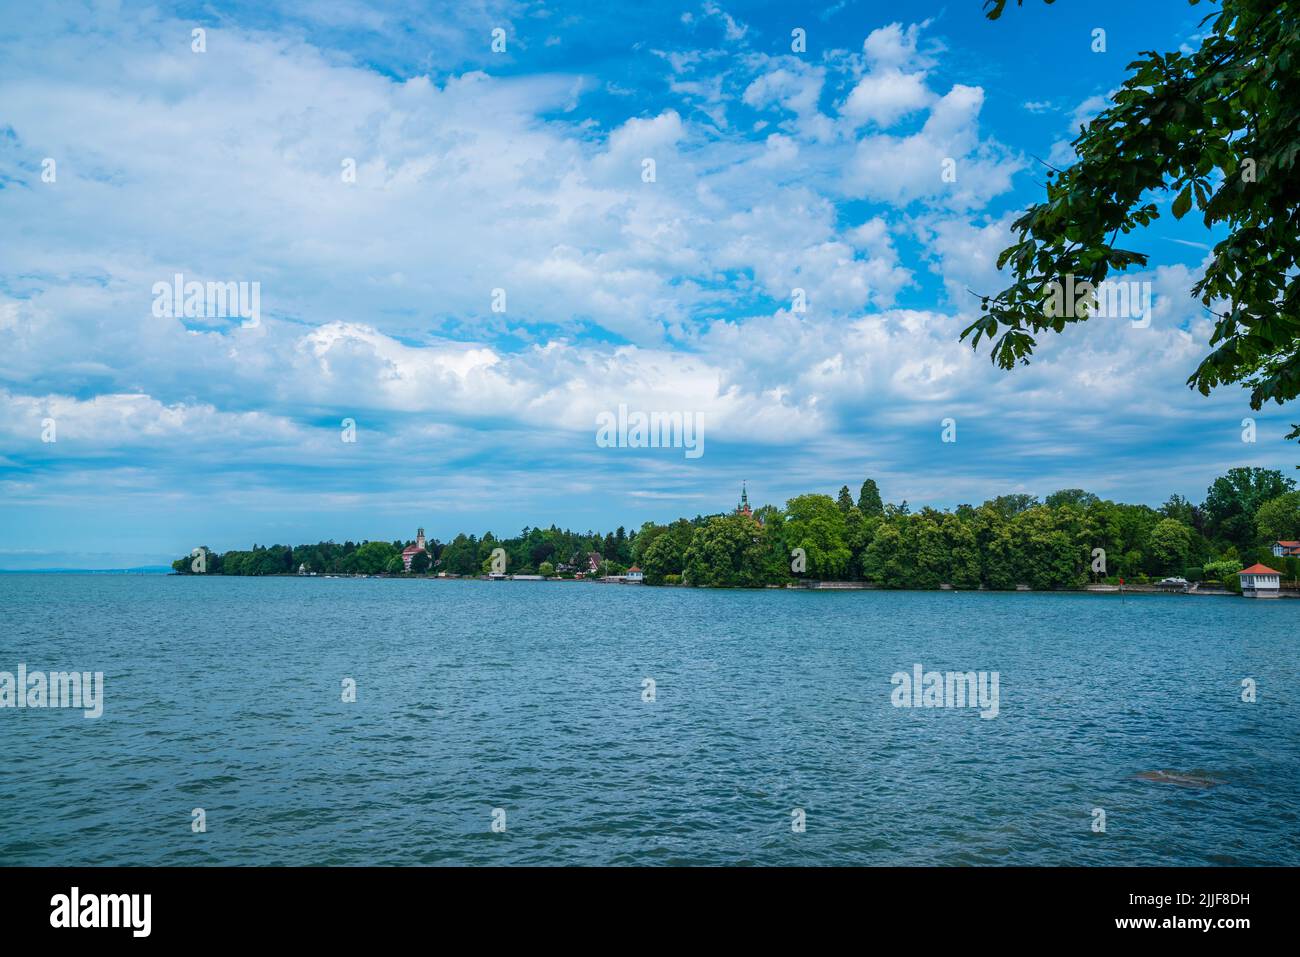 Alemania, hermoso bodensee a orillas del lago paisaje natural cerca de Bad schachen, vista desde la ciudad de lindau en verano al atardecer Foto de stock